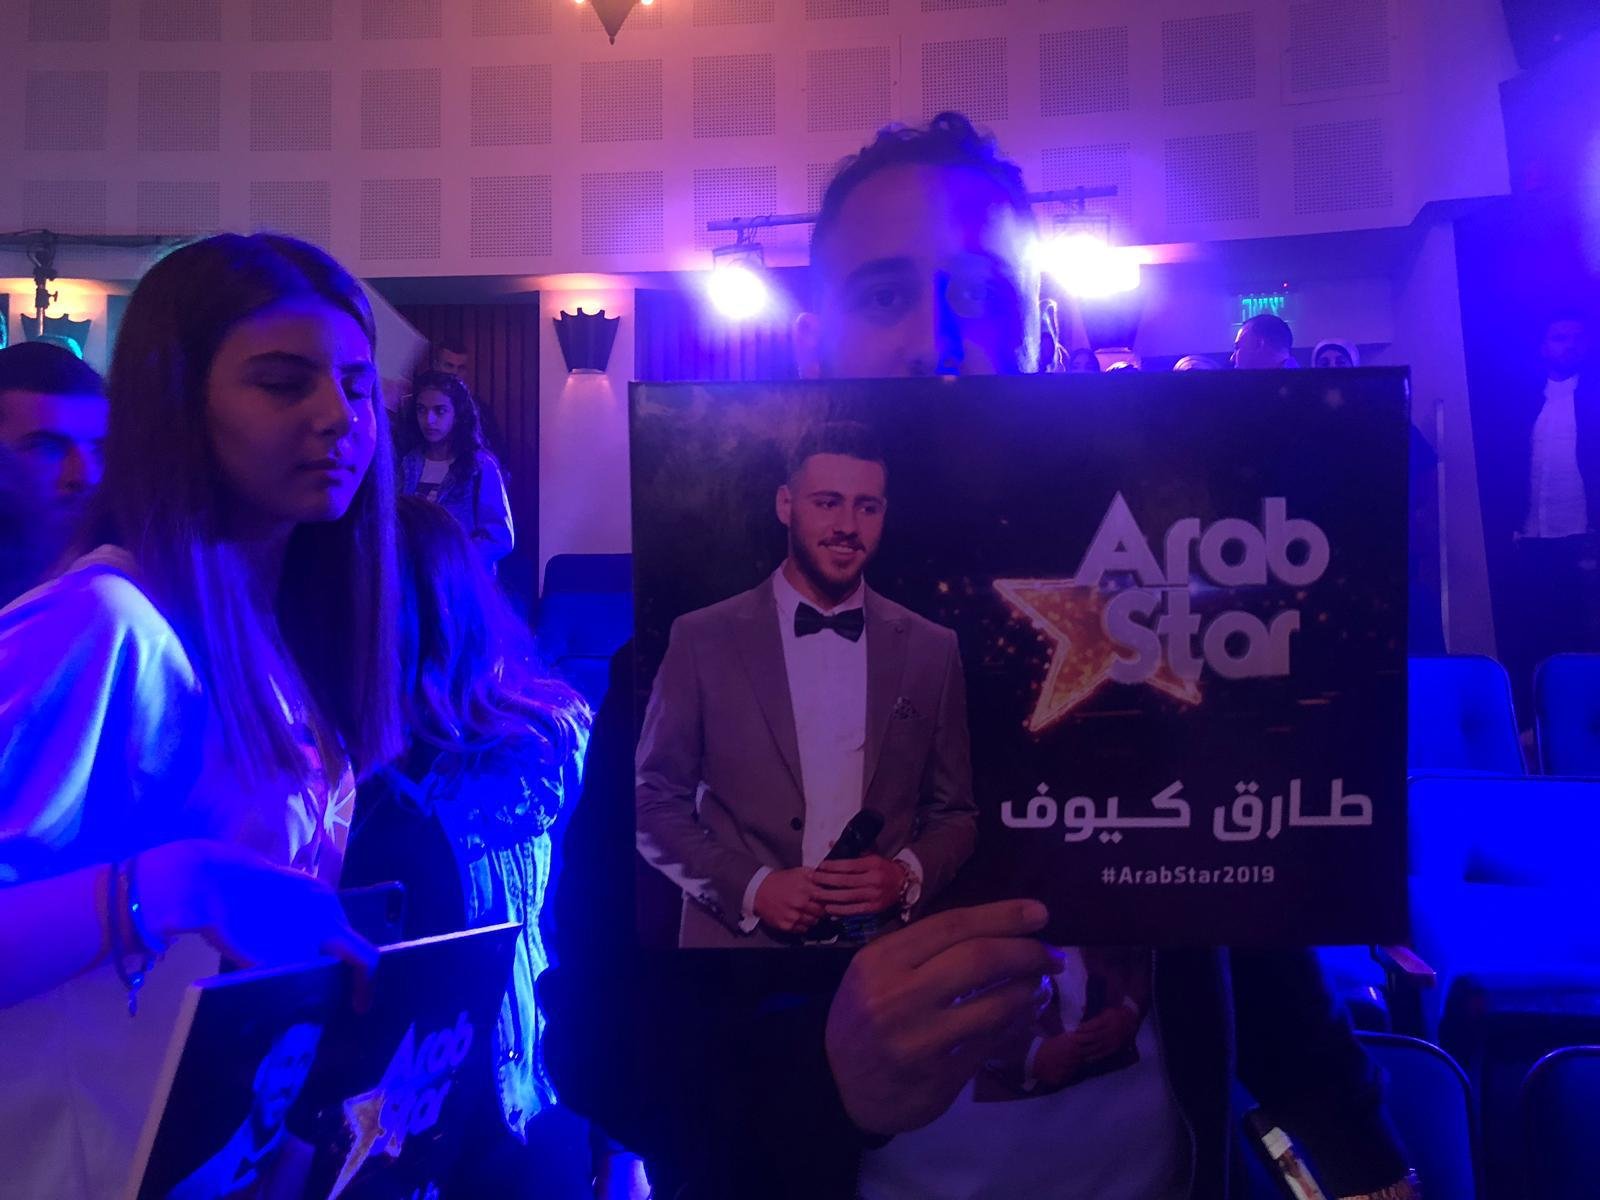 تتويج طارق كيّوف في لقب "عرب ستار" للعام 2019 -3